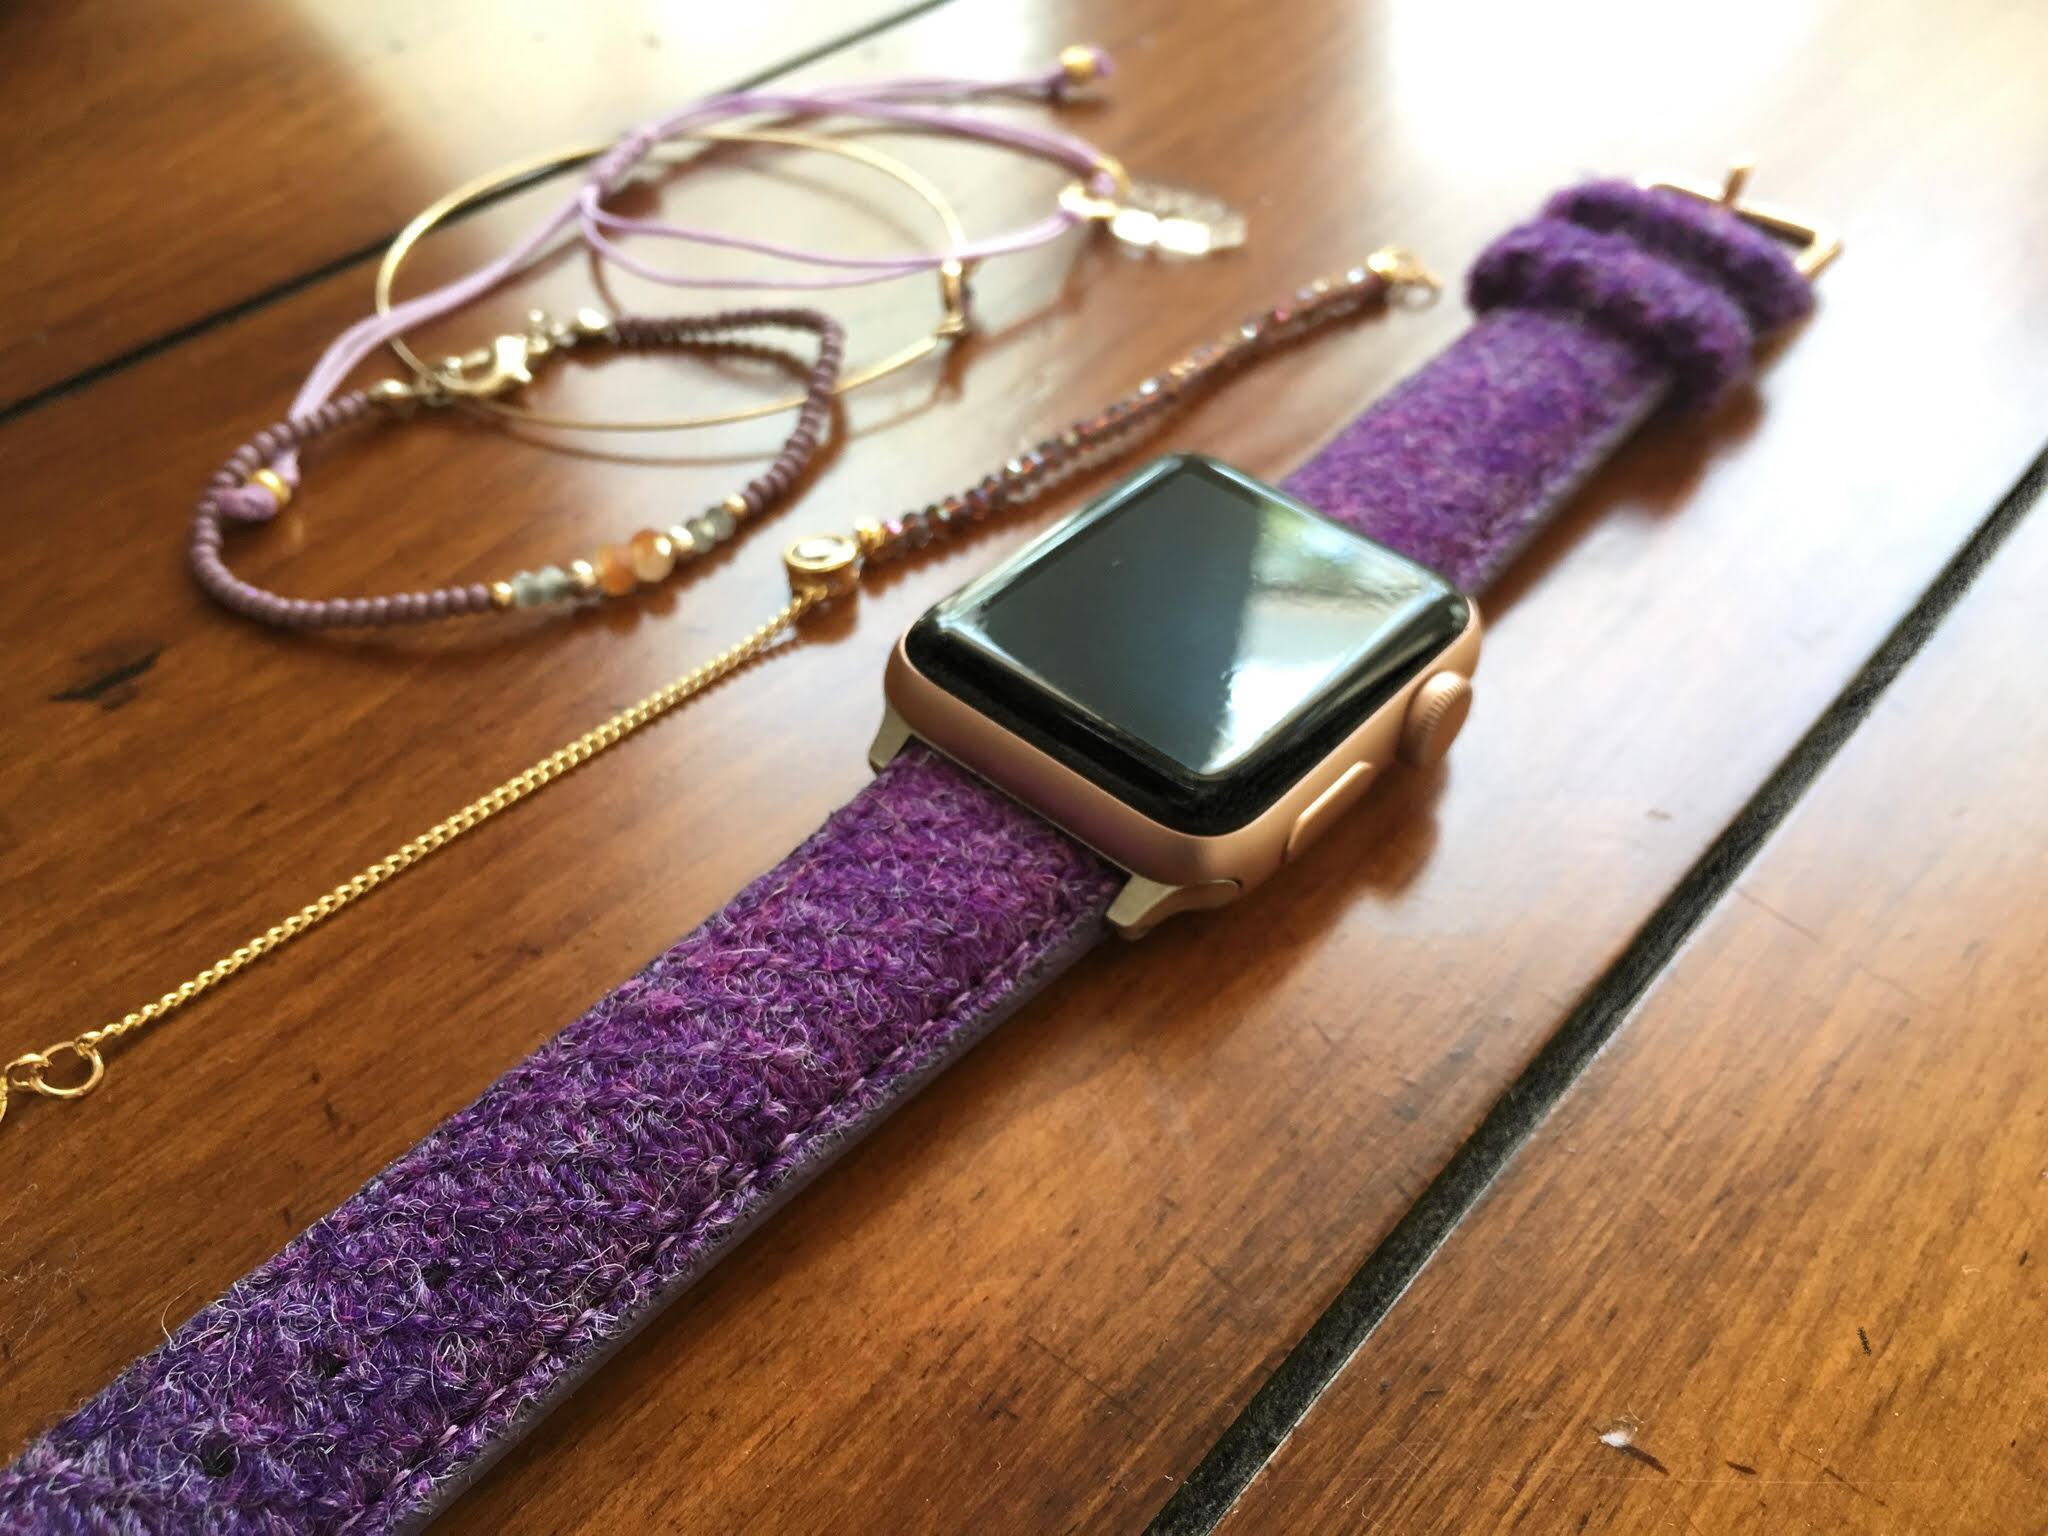 Apple watch with Vario Harris Tweed strap by #varioeveryday member @feyandherwatch